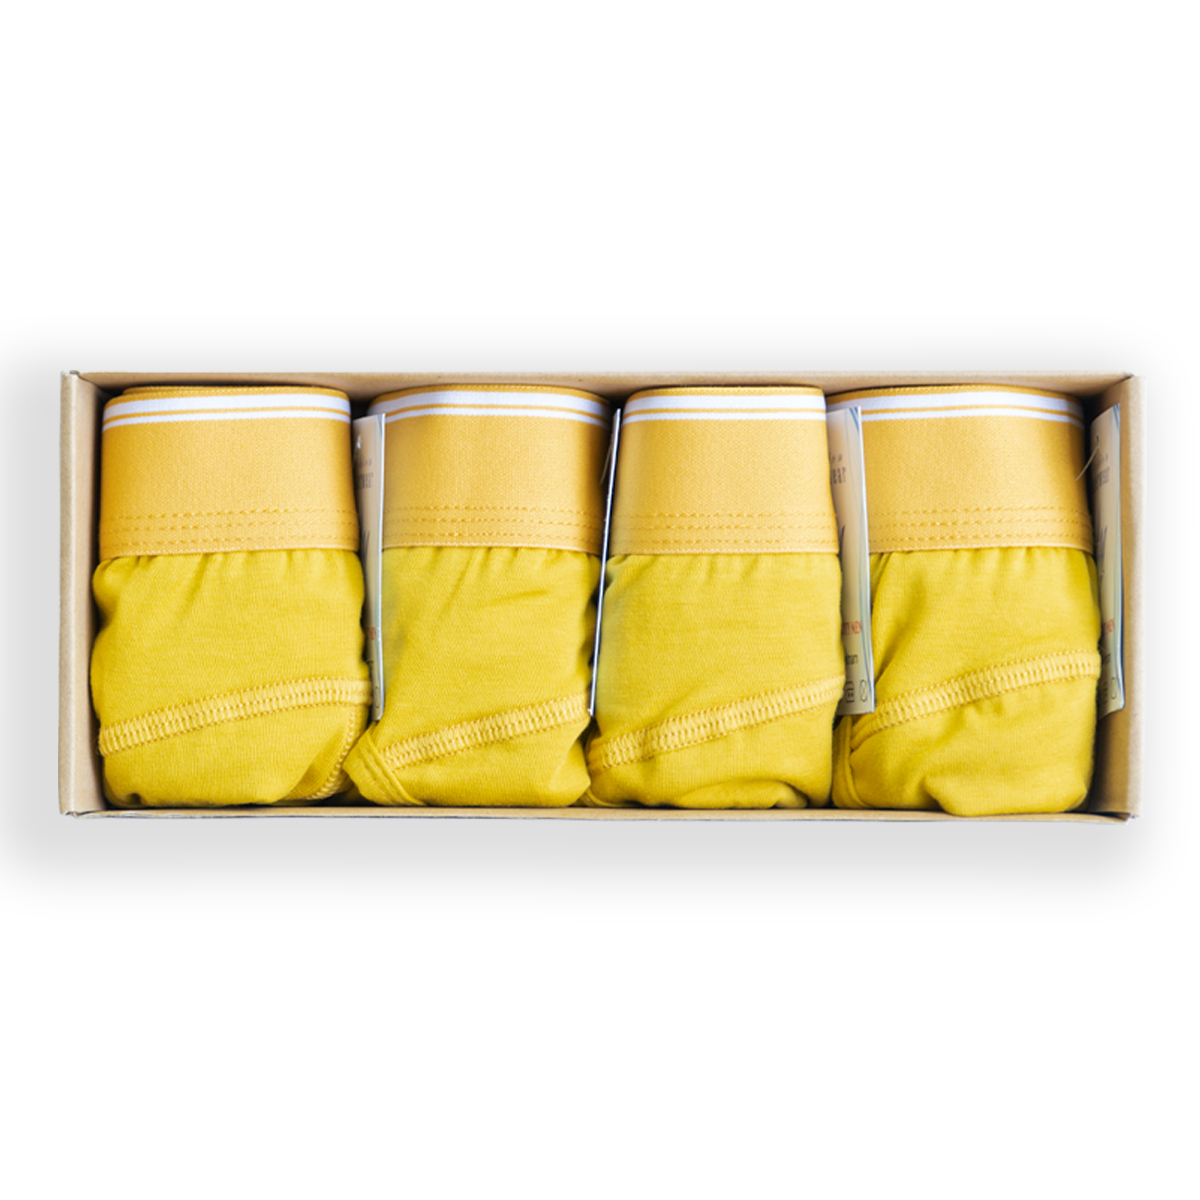 Hộp 4 Quần lót nam CITYMEN bản đặc biệt vải cotton co dãn 4 chiều cao cấp lưng trơn màu vàng